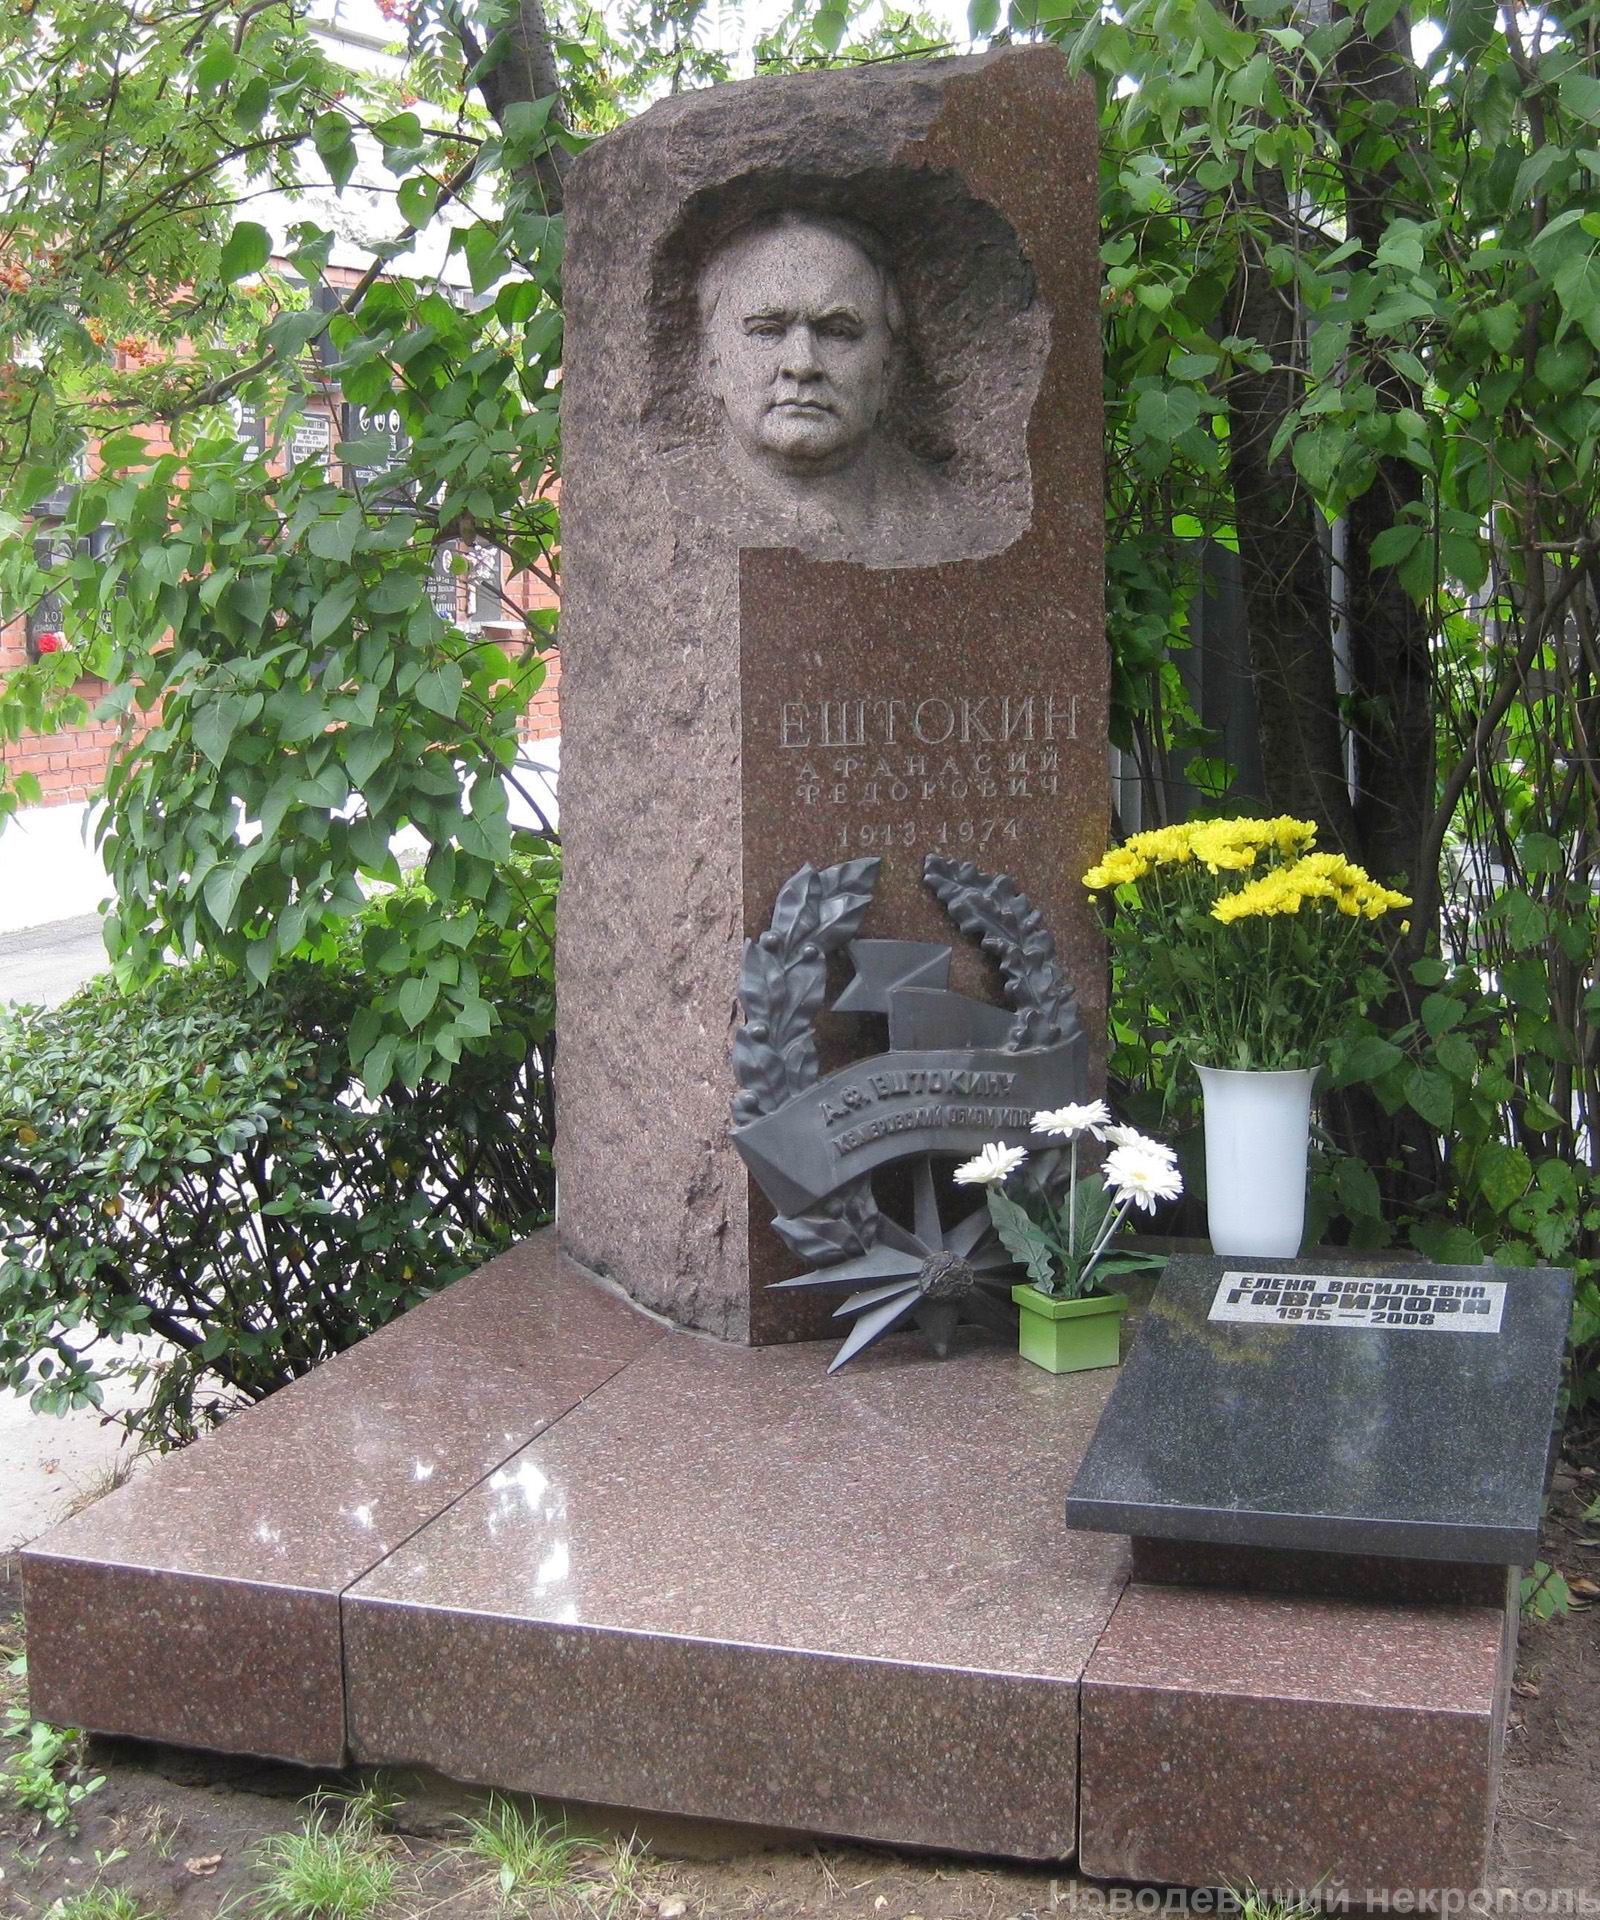 Памятник на могиле Ештокина А.Ф. (1913-1974), ск. Л.Кербель, Ю.Гаврилова, арх. В.Датюк, на Новодевичьем кладбище (7-7-24).